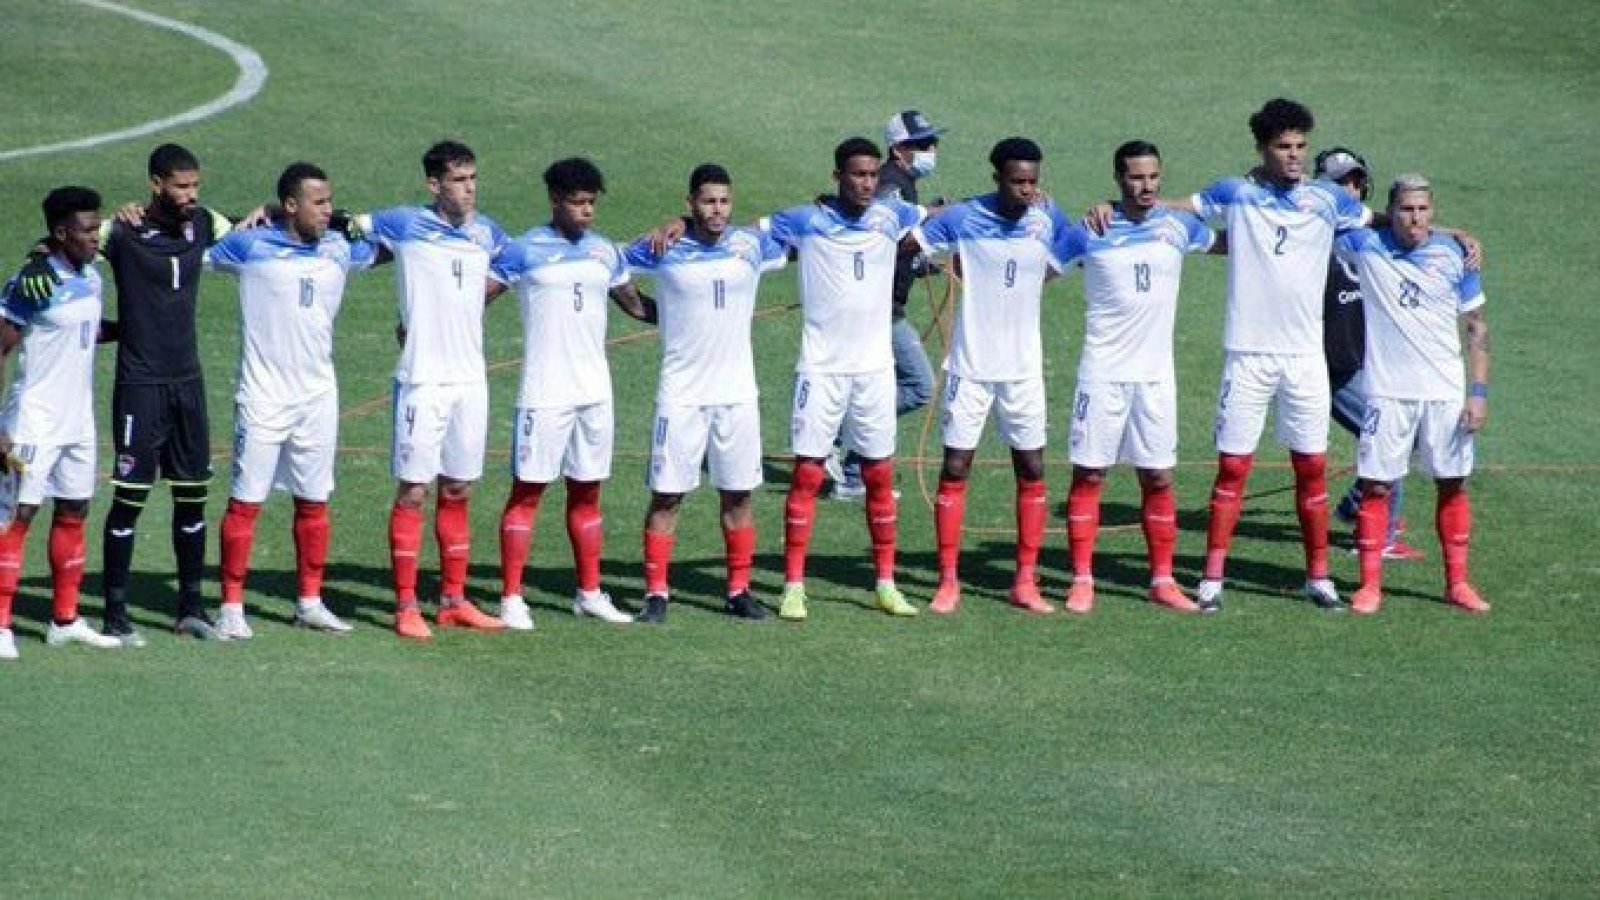 Atento Chile: ¿Cuál es la figura de Cuba y en qué equipo juega actualmente? | 24horas